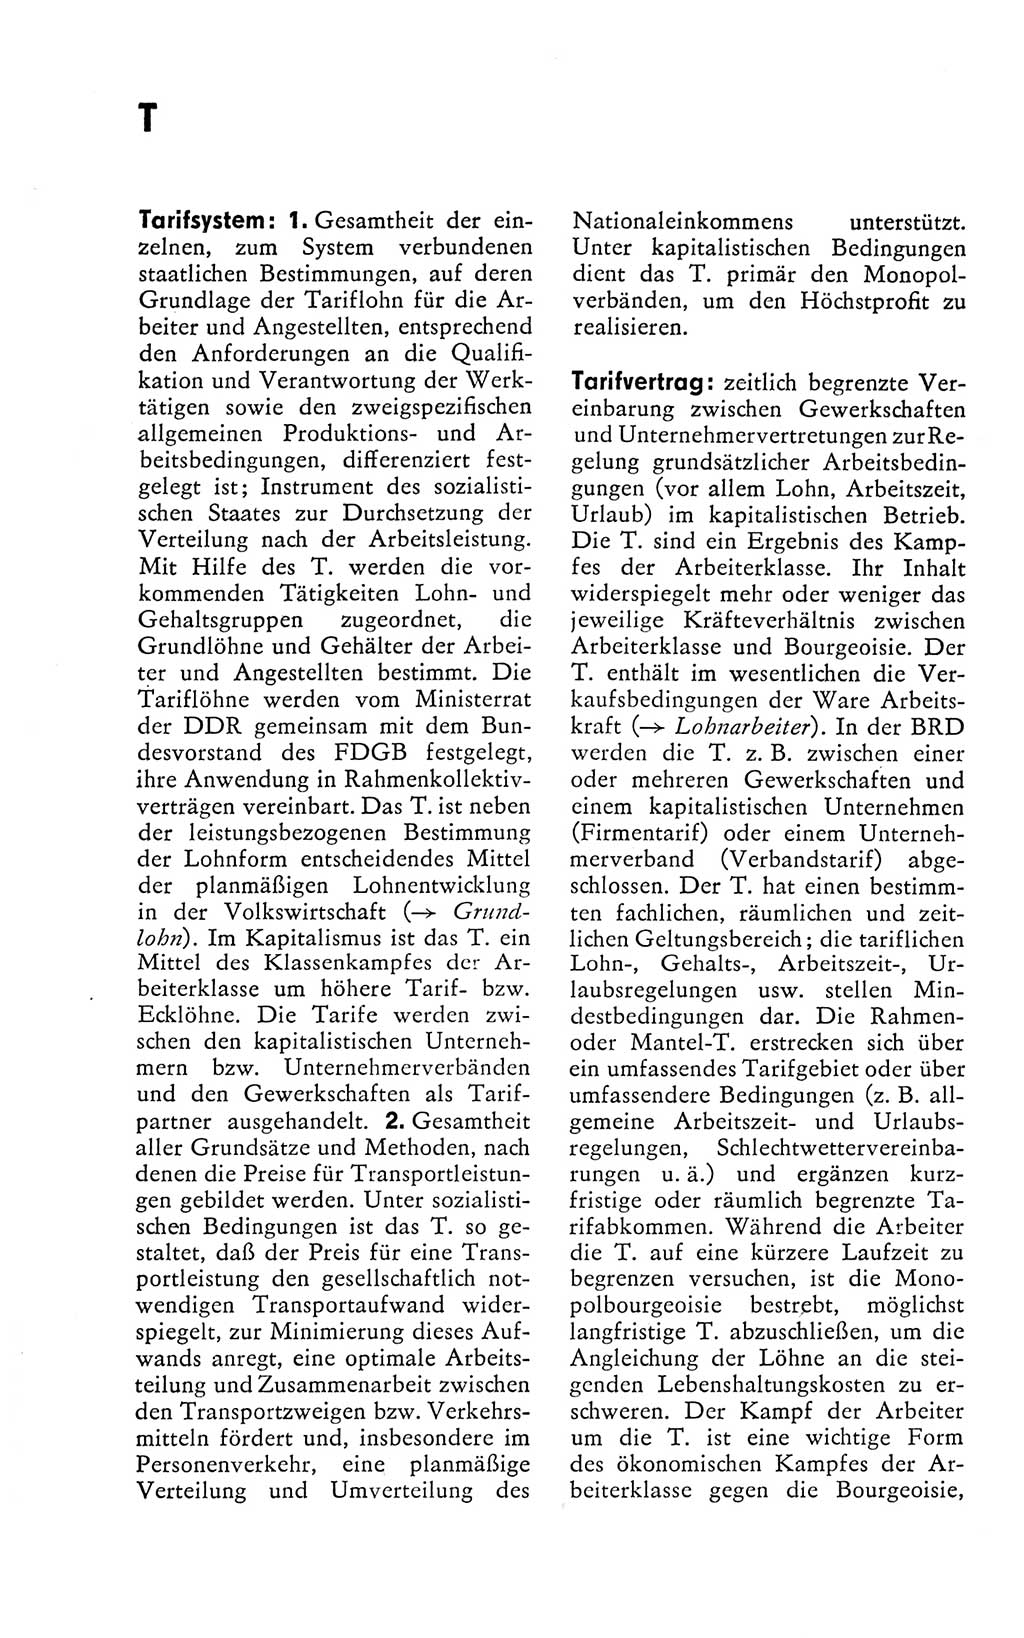 Kleines politisches Wörterbuch [Deutsche Demokratische Republik (DDR)] 1978, Seite 896 (Kl. pol. Wb. DDR 1978, S. 896)